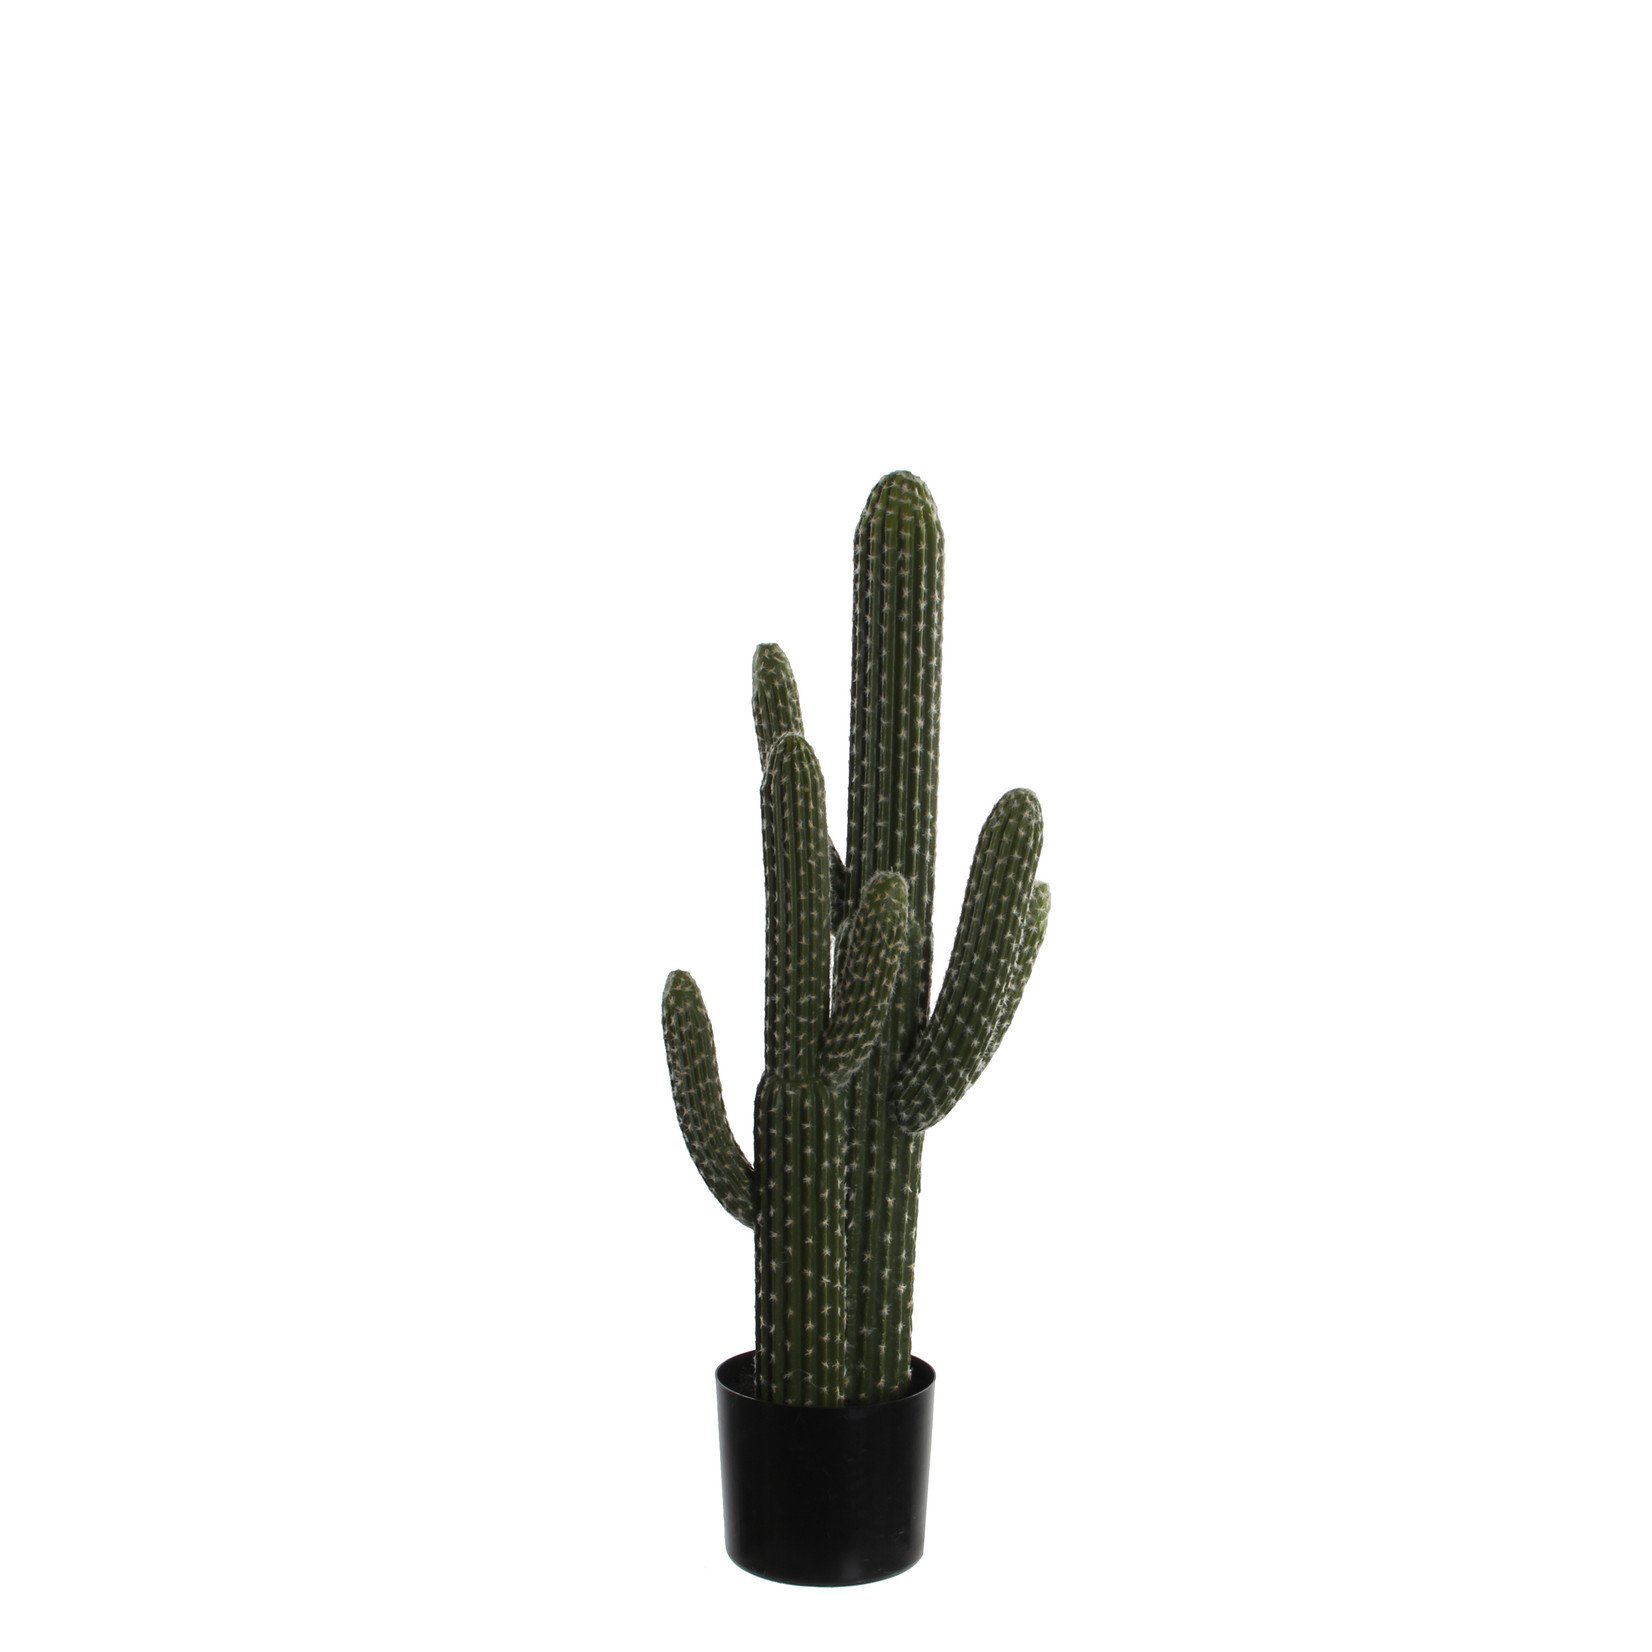 MiCa 1030096 Cactus in pot